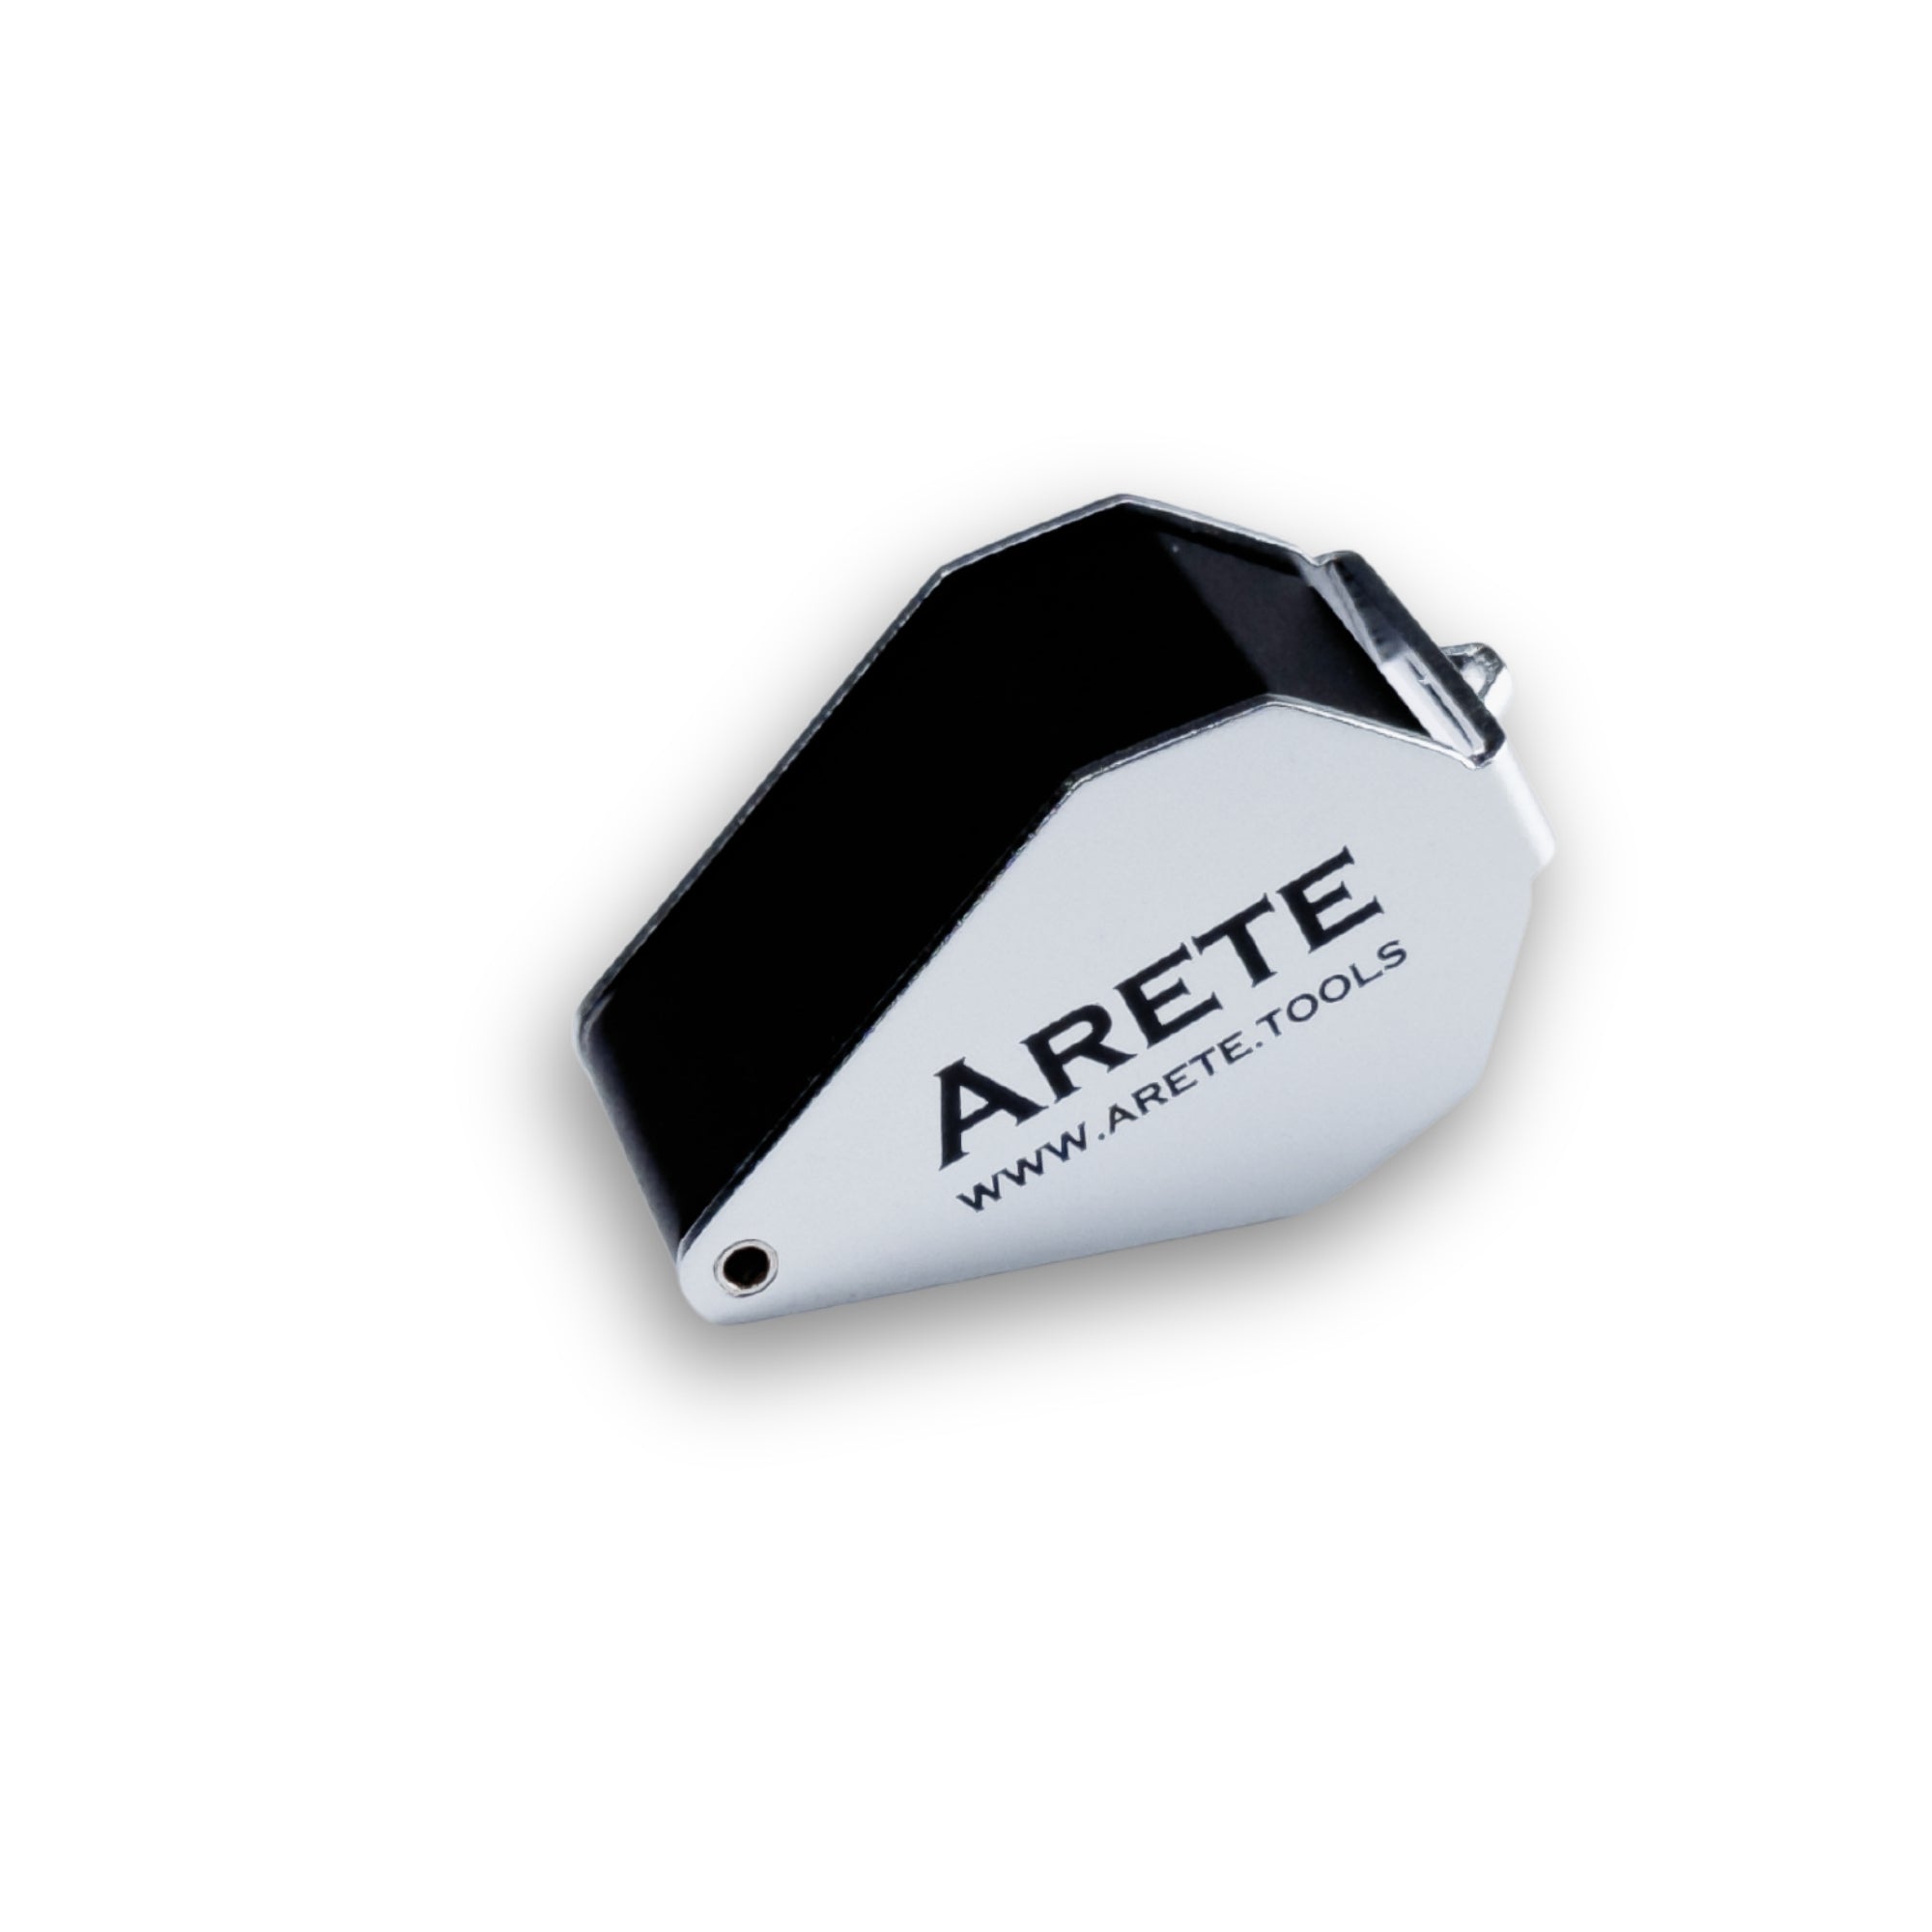 Zseb nagyító Arete 10x - 21mm LED lámpával az elemeken